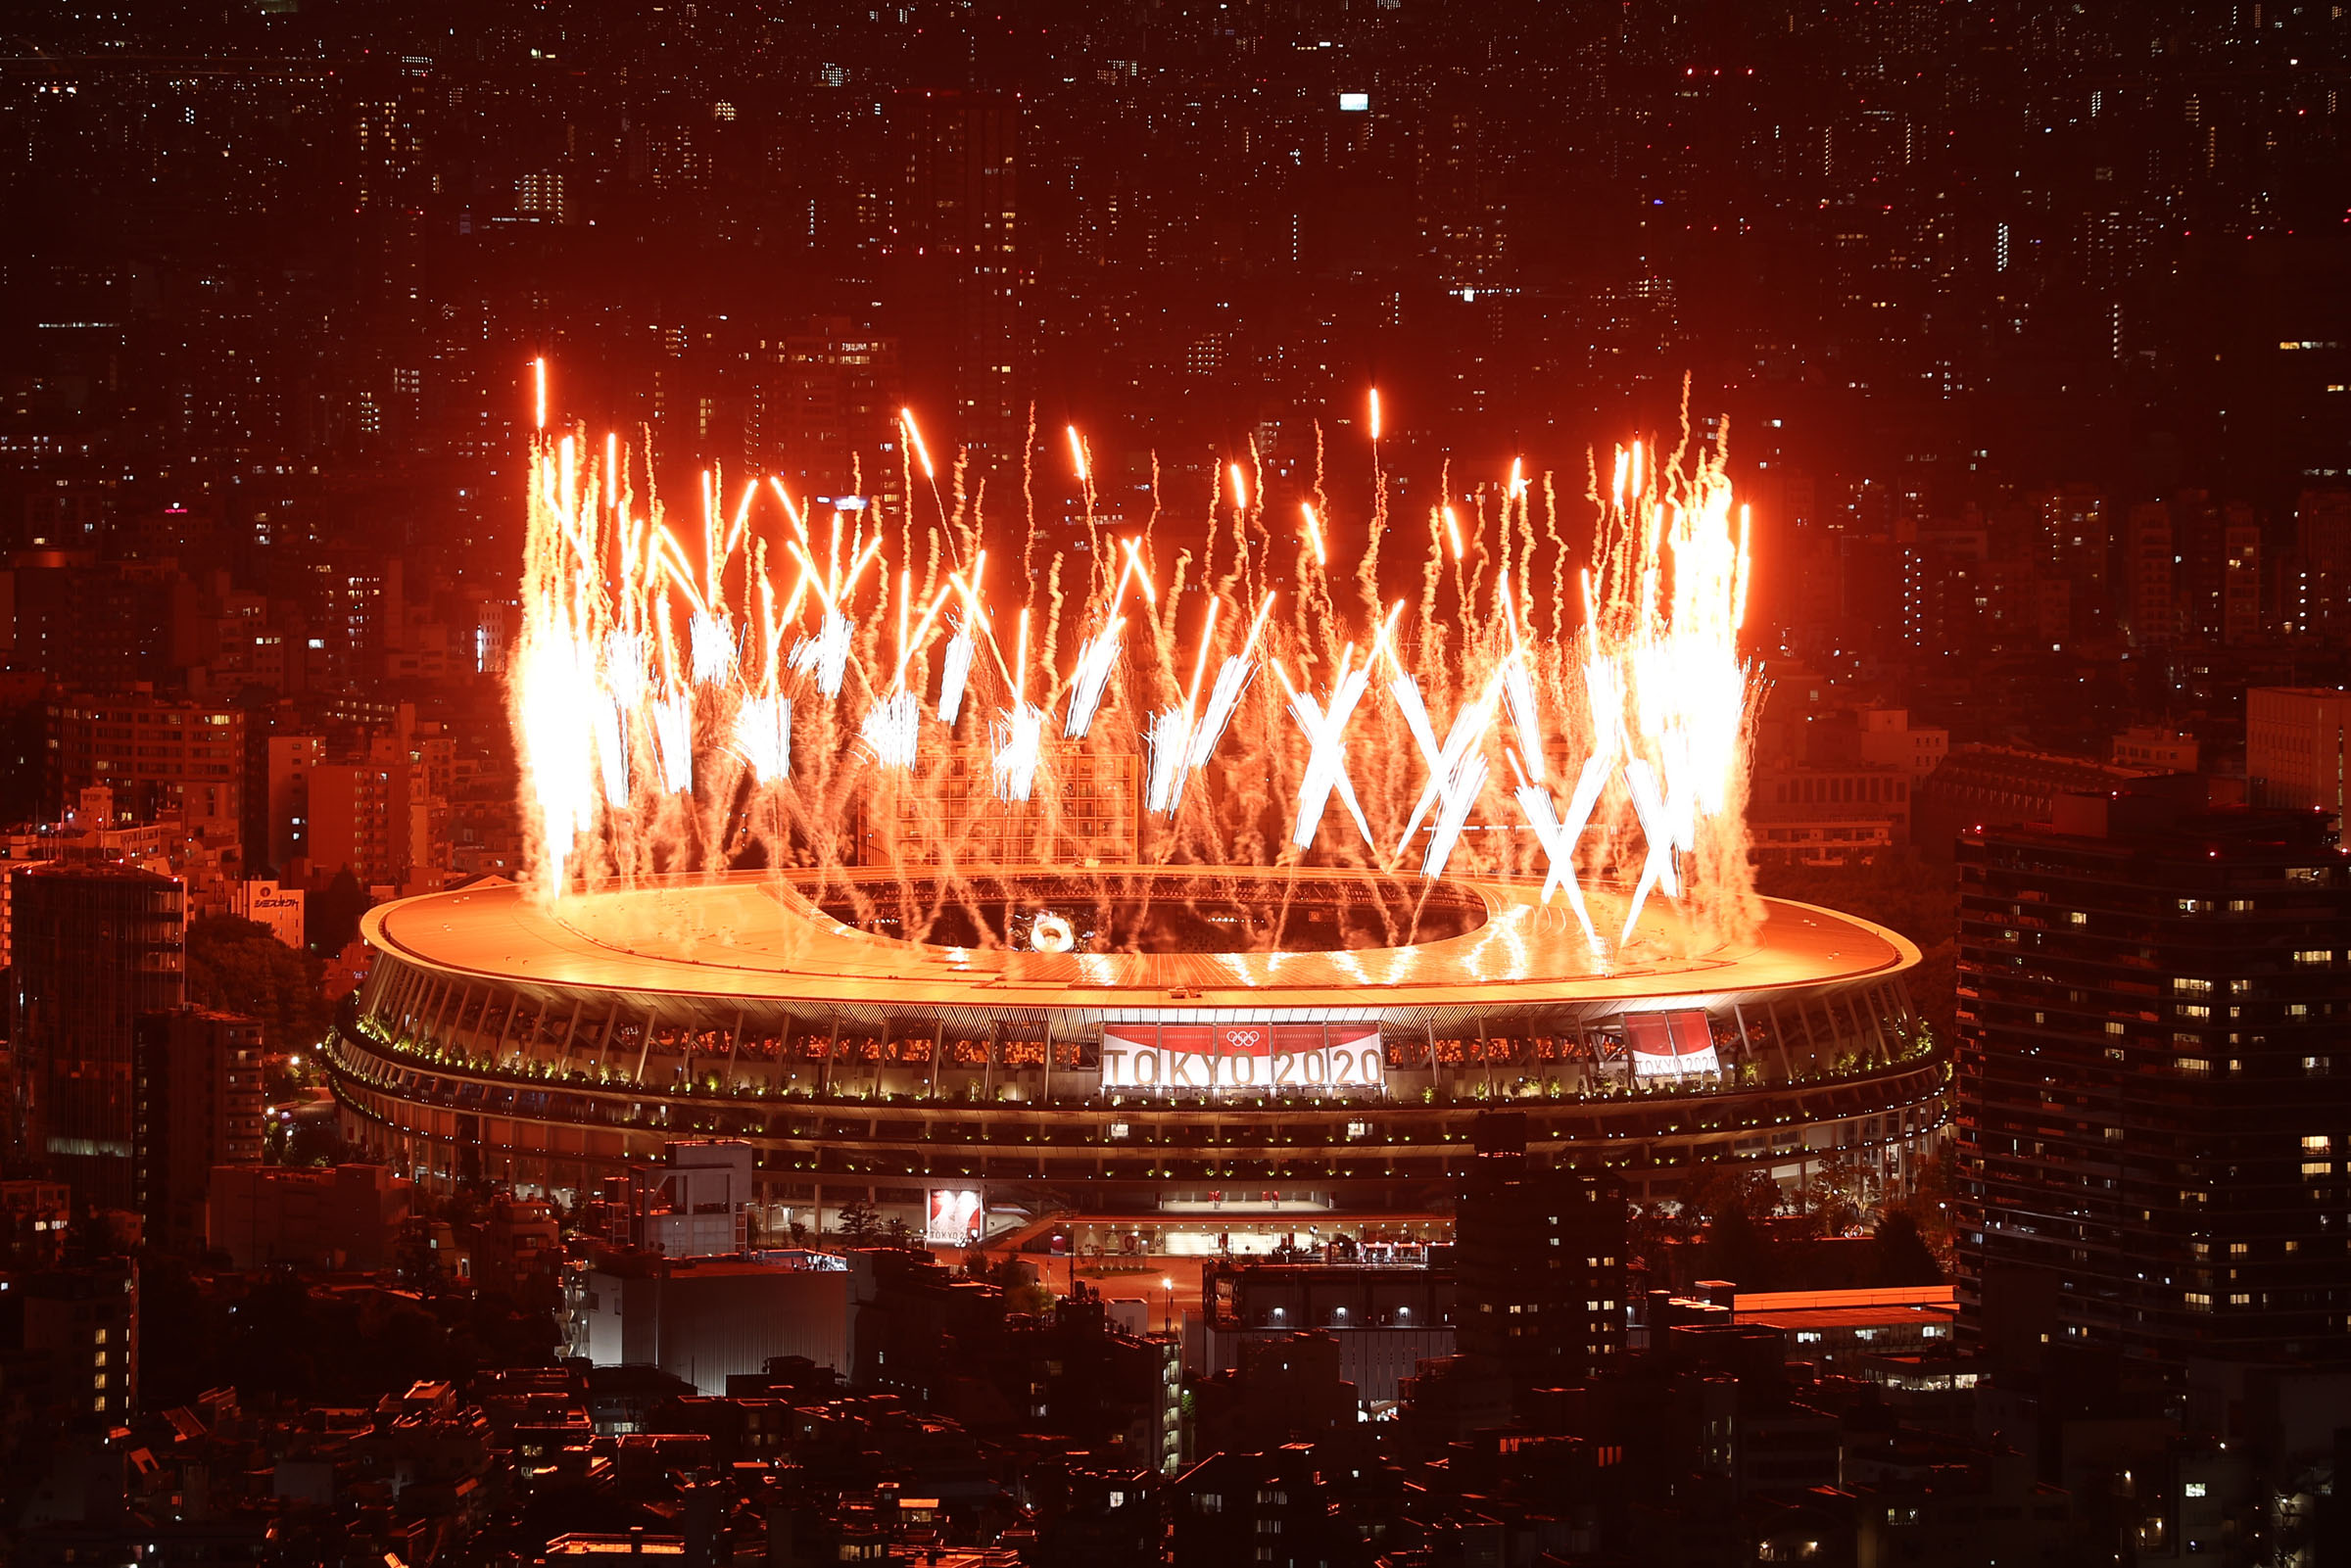 टोकियो ओलम्पिक : ६ स्वर्णसहित चीनकाे शीर्ष स्थान कायमै